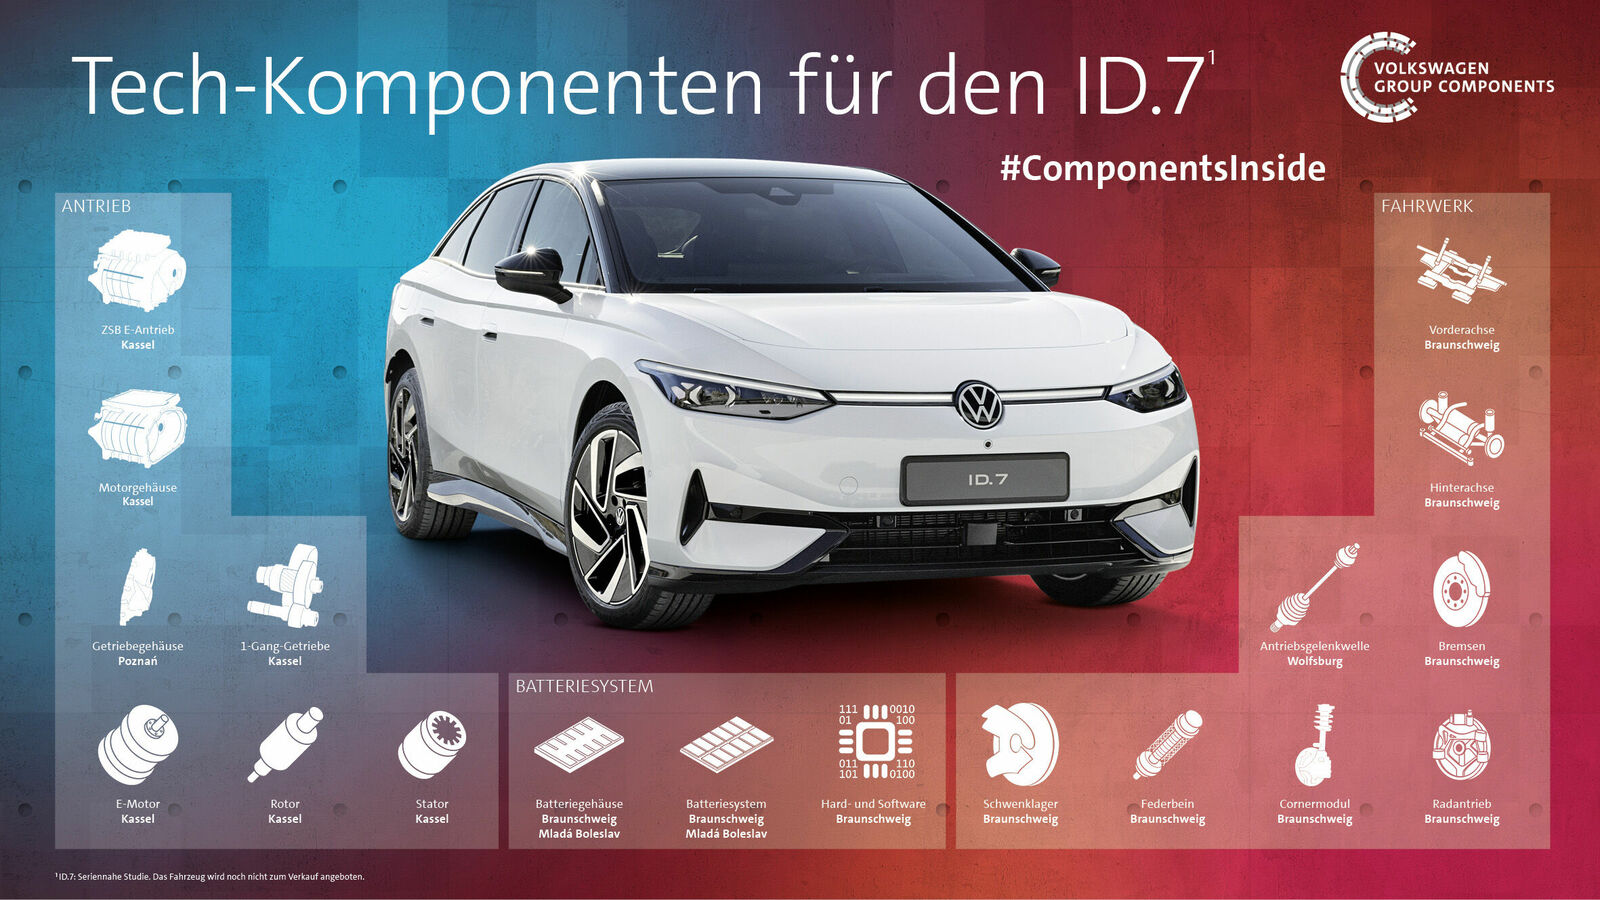 Volkswagen Group Technology: Mit der Bündelung von Kompetenzen zur Technologieführerschaft in der E-Mobilität